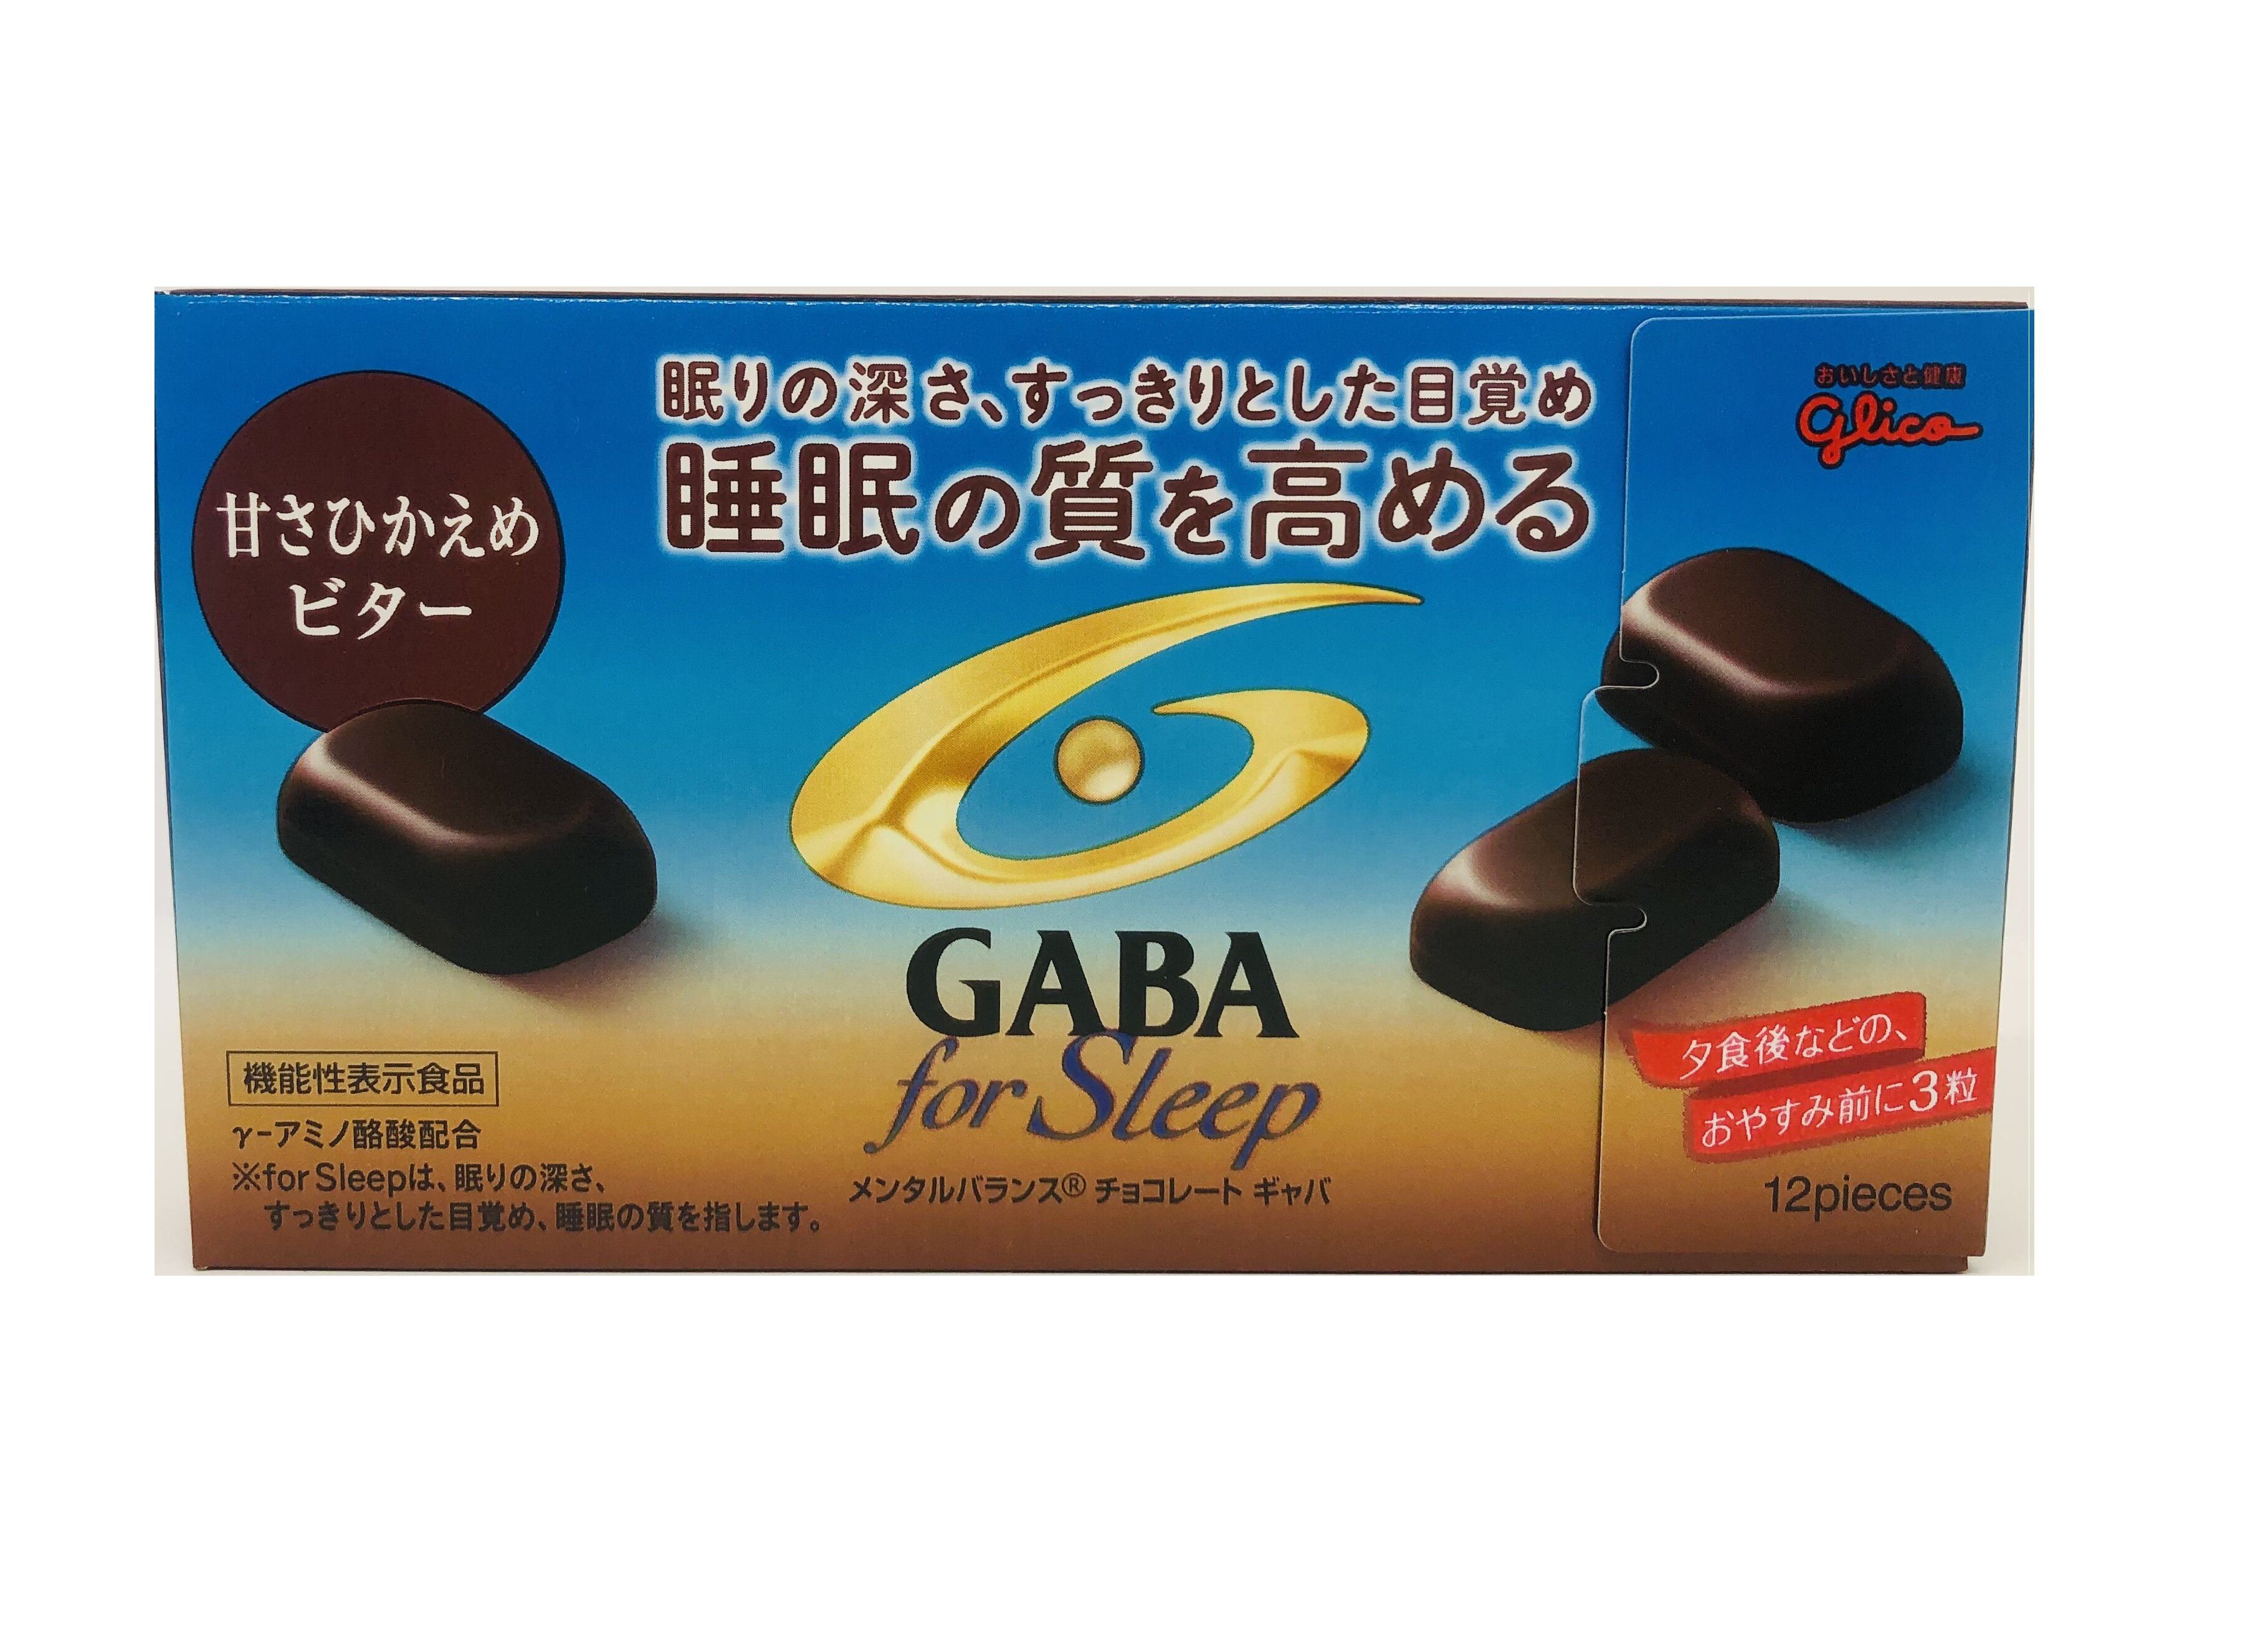 Шоколад горький GABA GLICO for Sleep от стресса и для улучшения сна 12 шт в упаковке